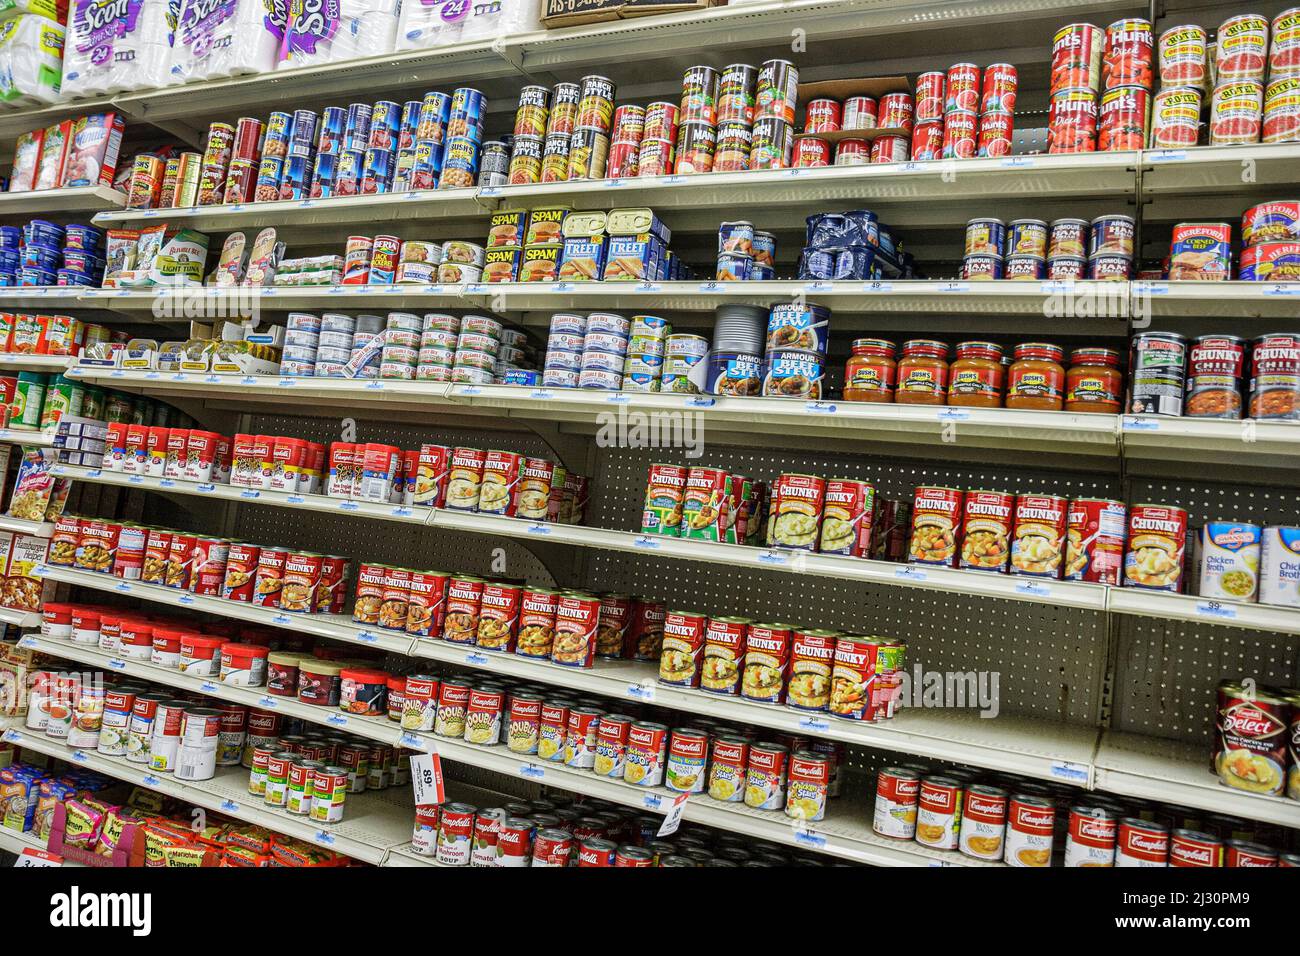 Miami Florida, Kmart all'interno corridoio interno conserve merci cibo zuppe di carne, scaffali scaffali mostra prezzi di vendita Foto Stock